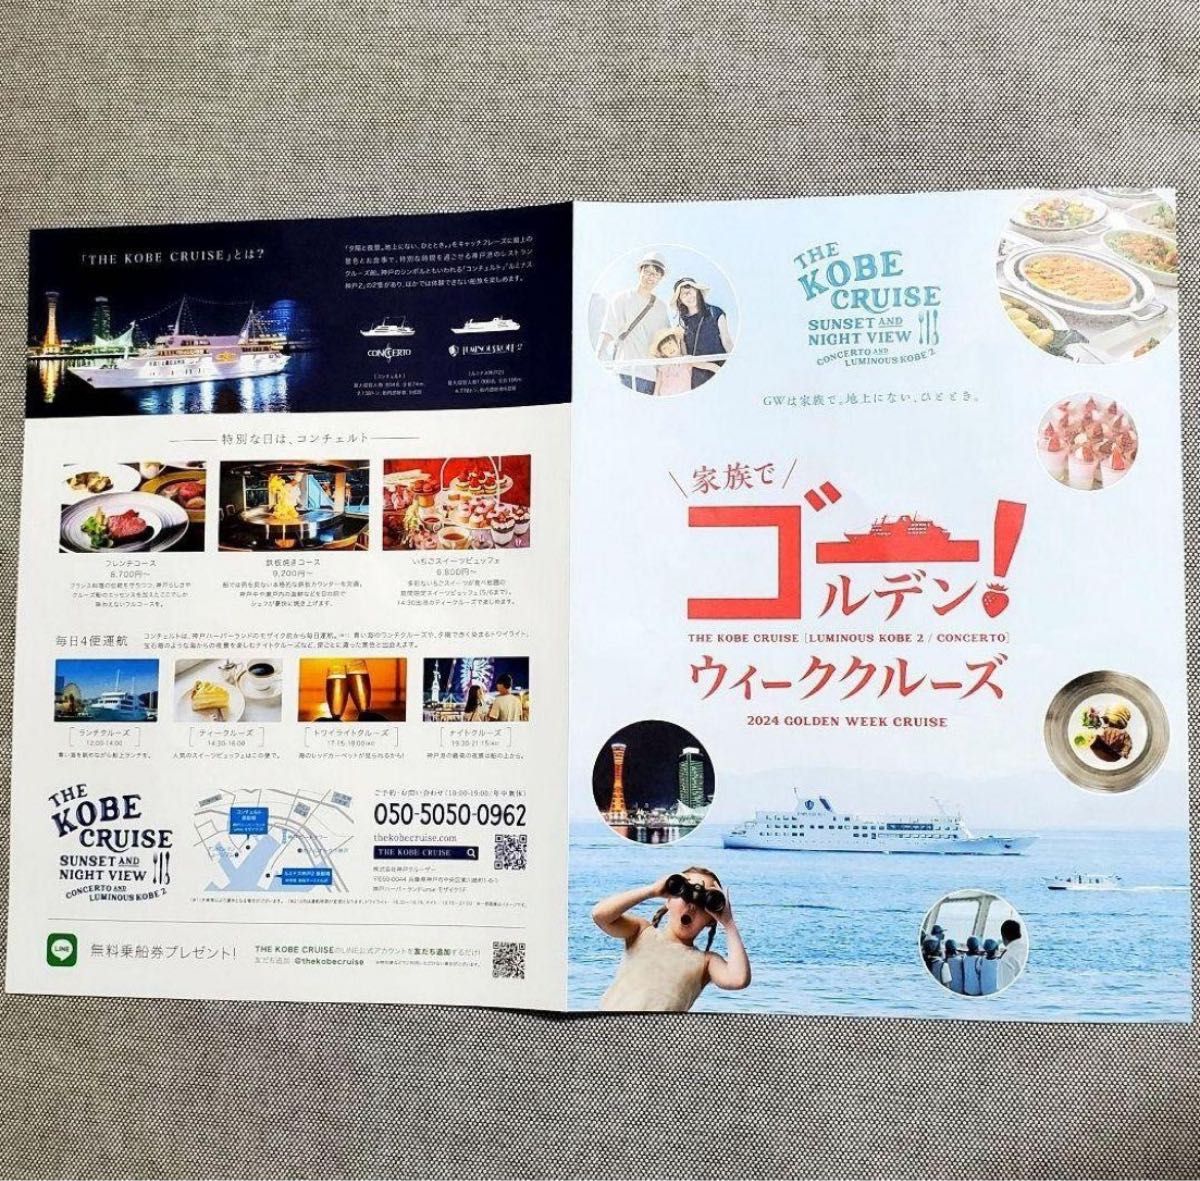 THE KOBE CRUISE コンチェルト・ルミナス神戸2 無料乗船券